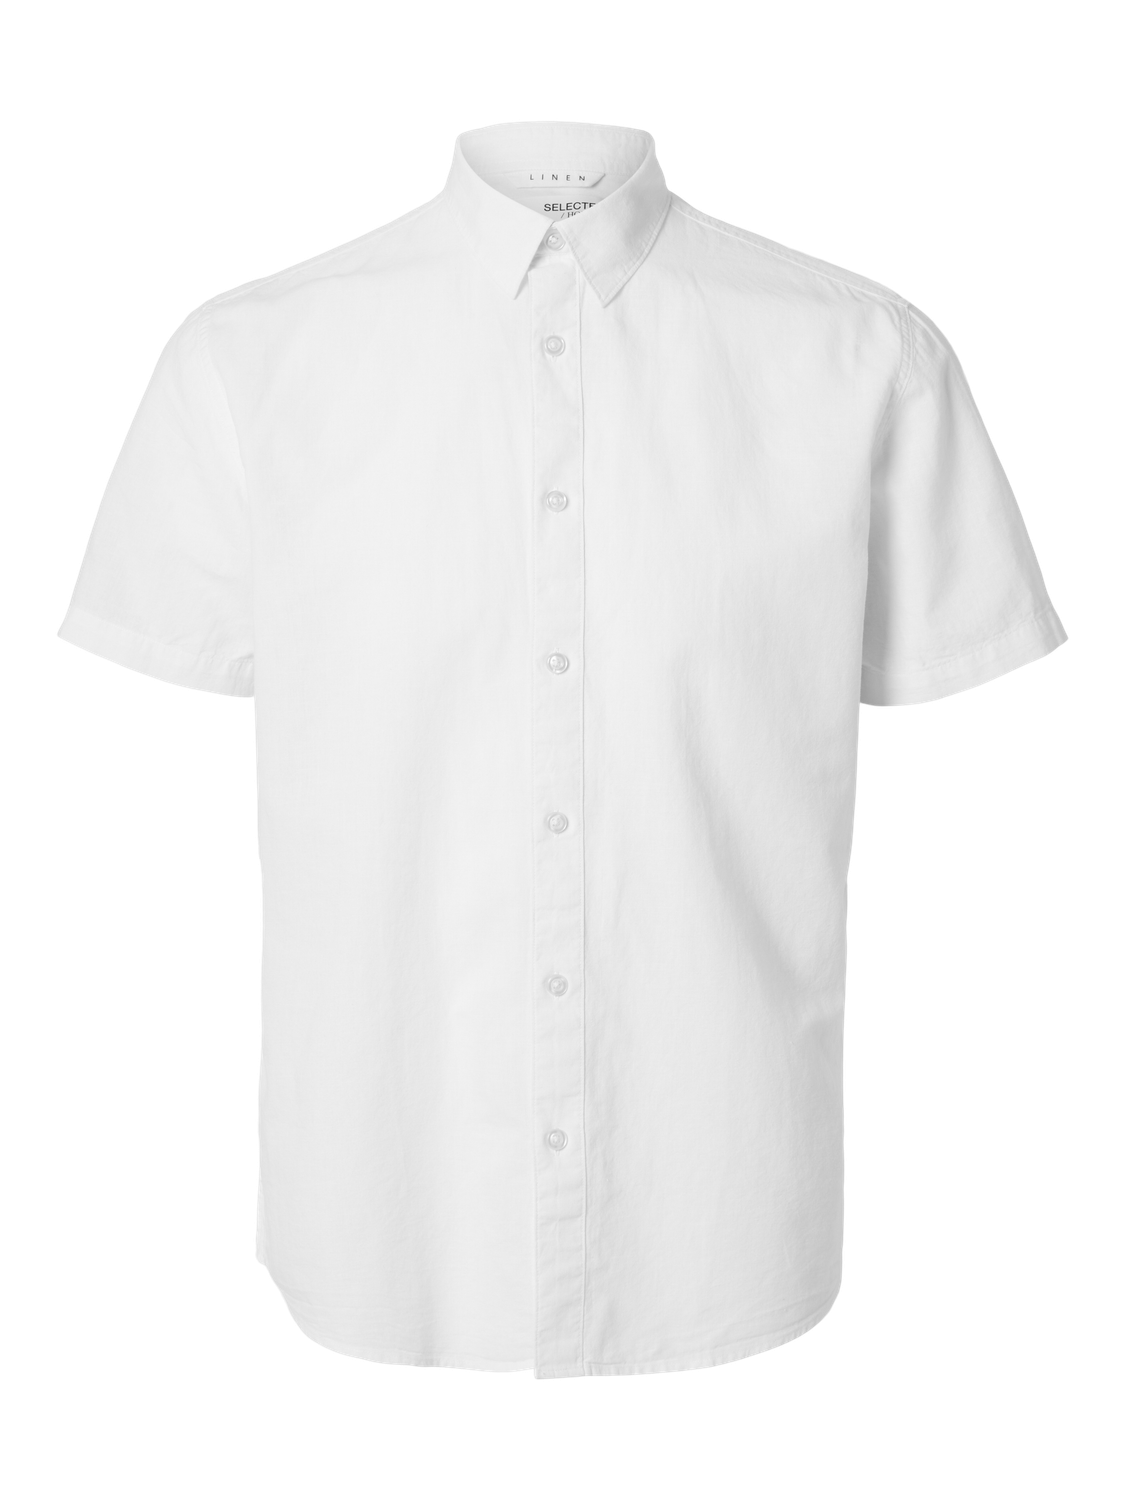 SLHREG-NEW Shirts - White